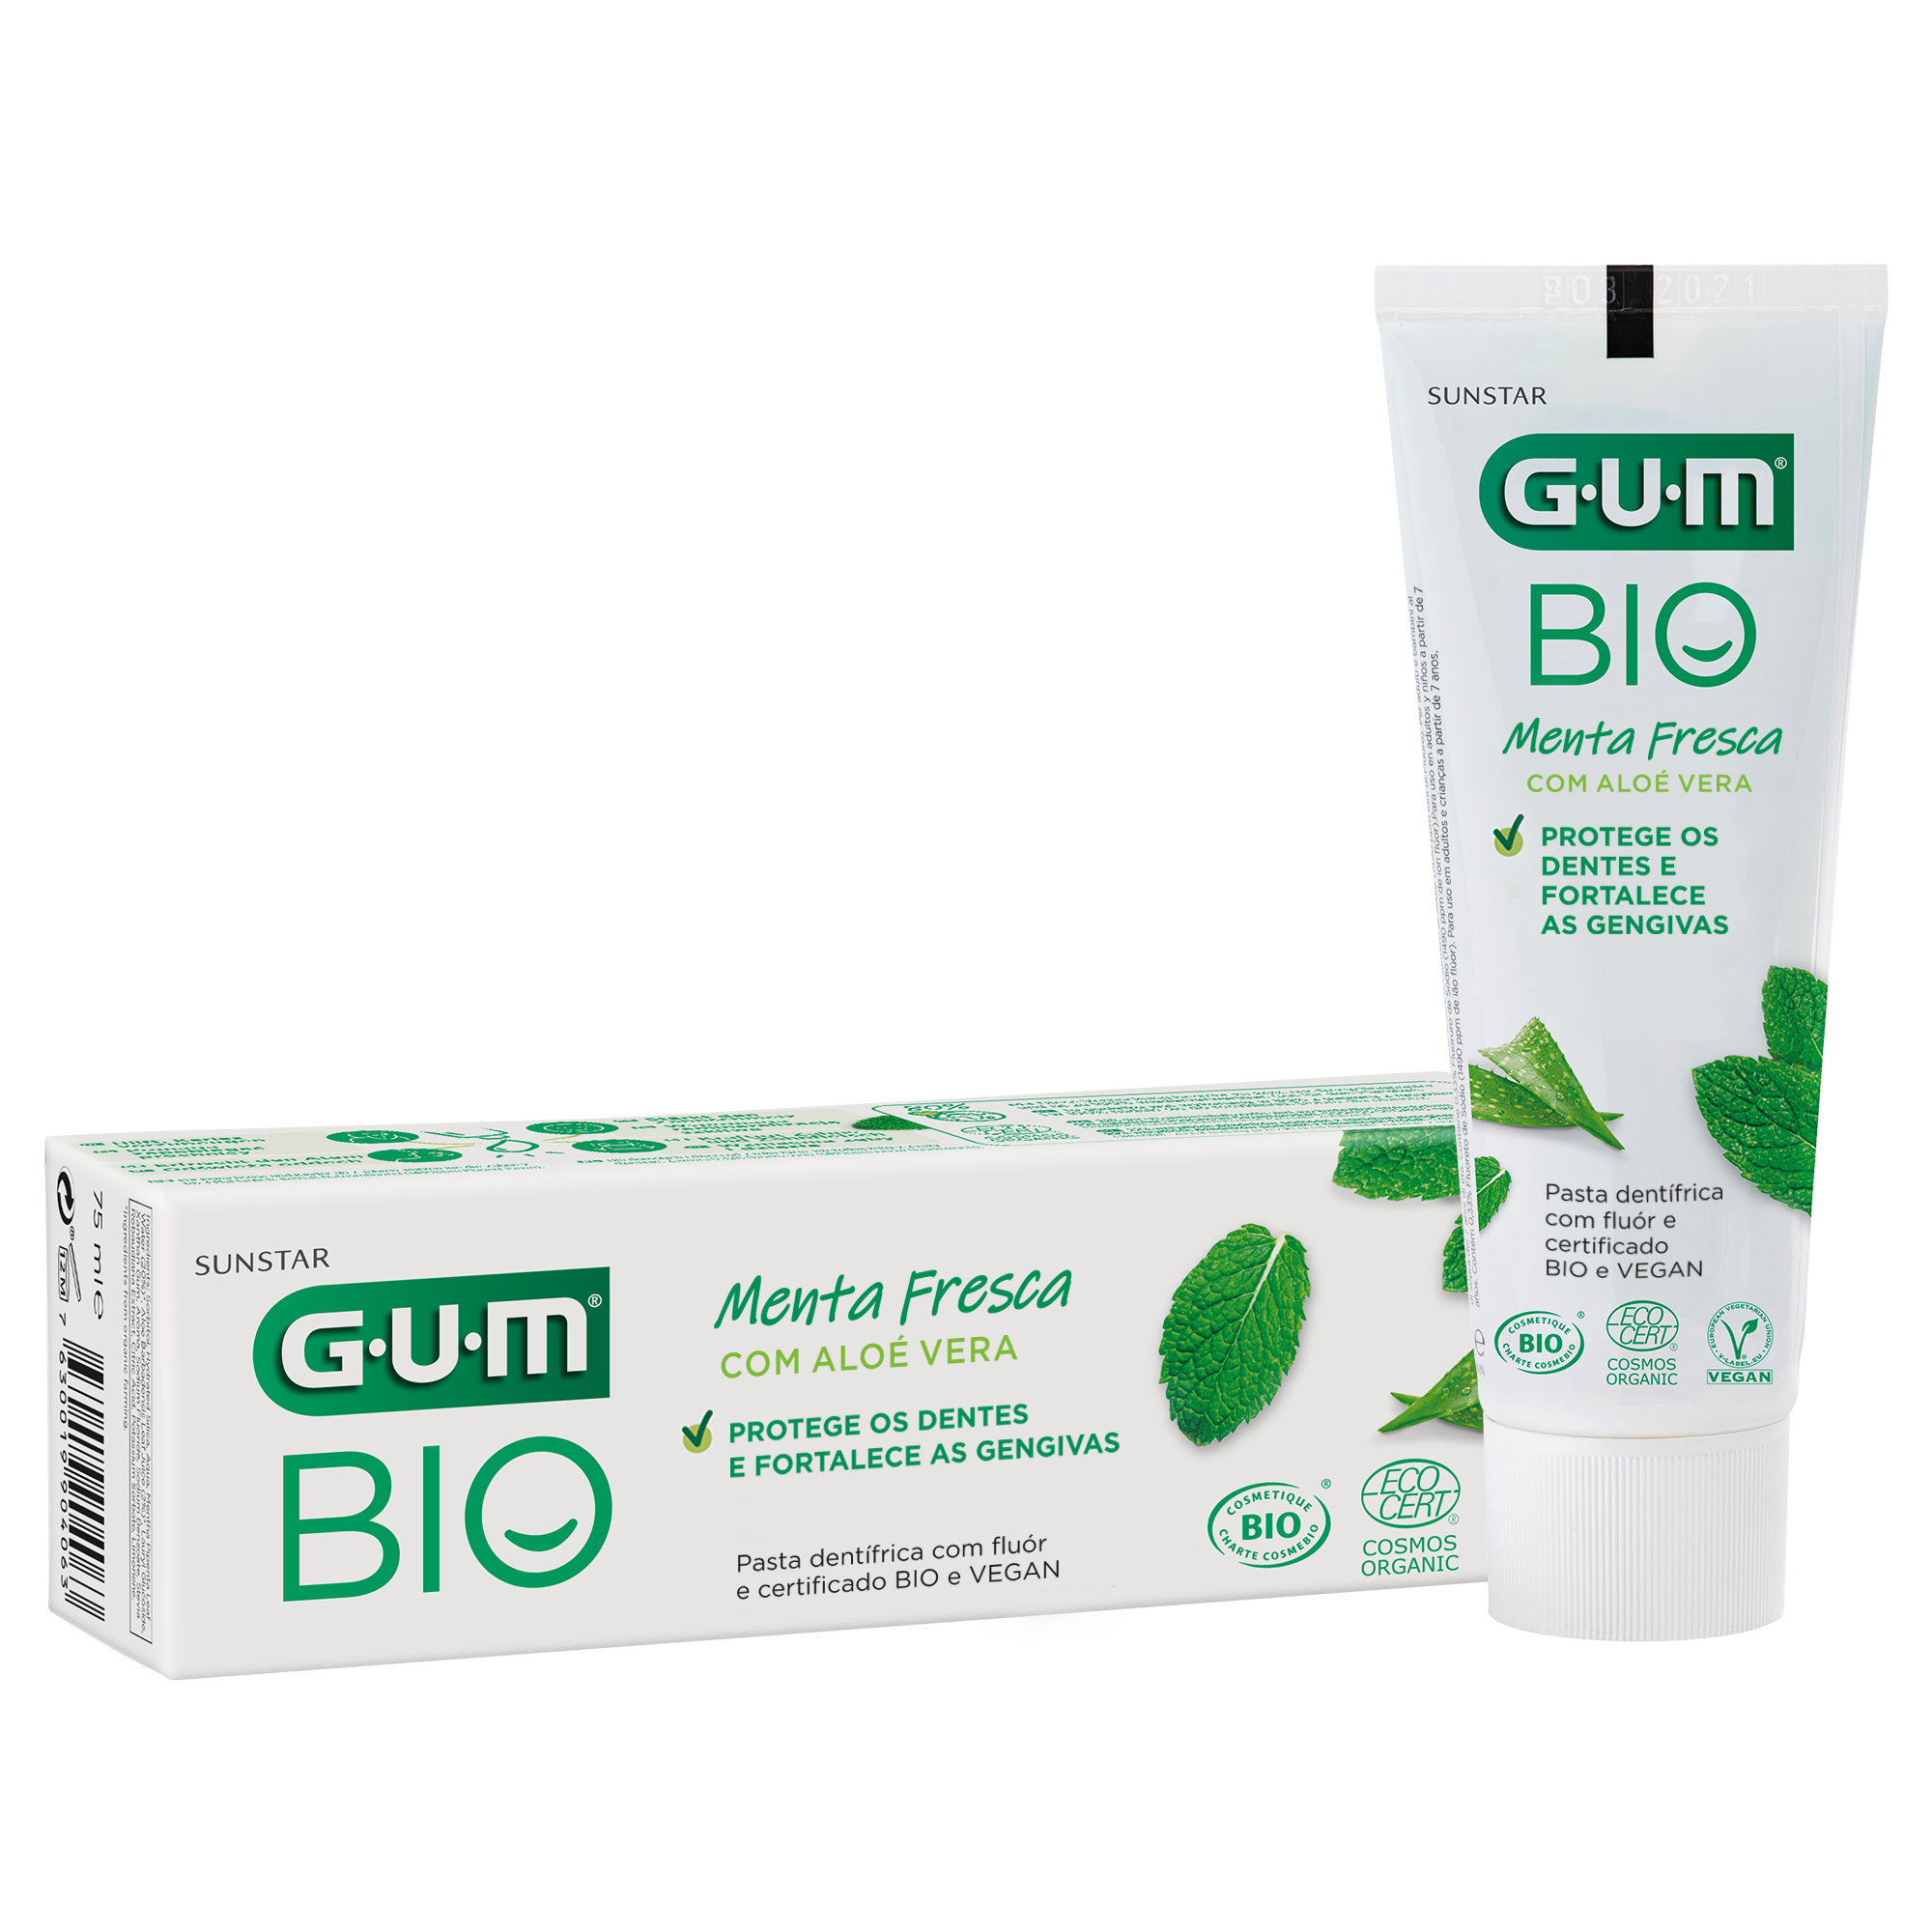 P7020-PT-GUM-BIO-Toothpaste-Box-Tube